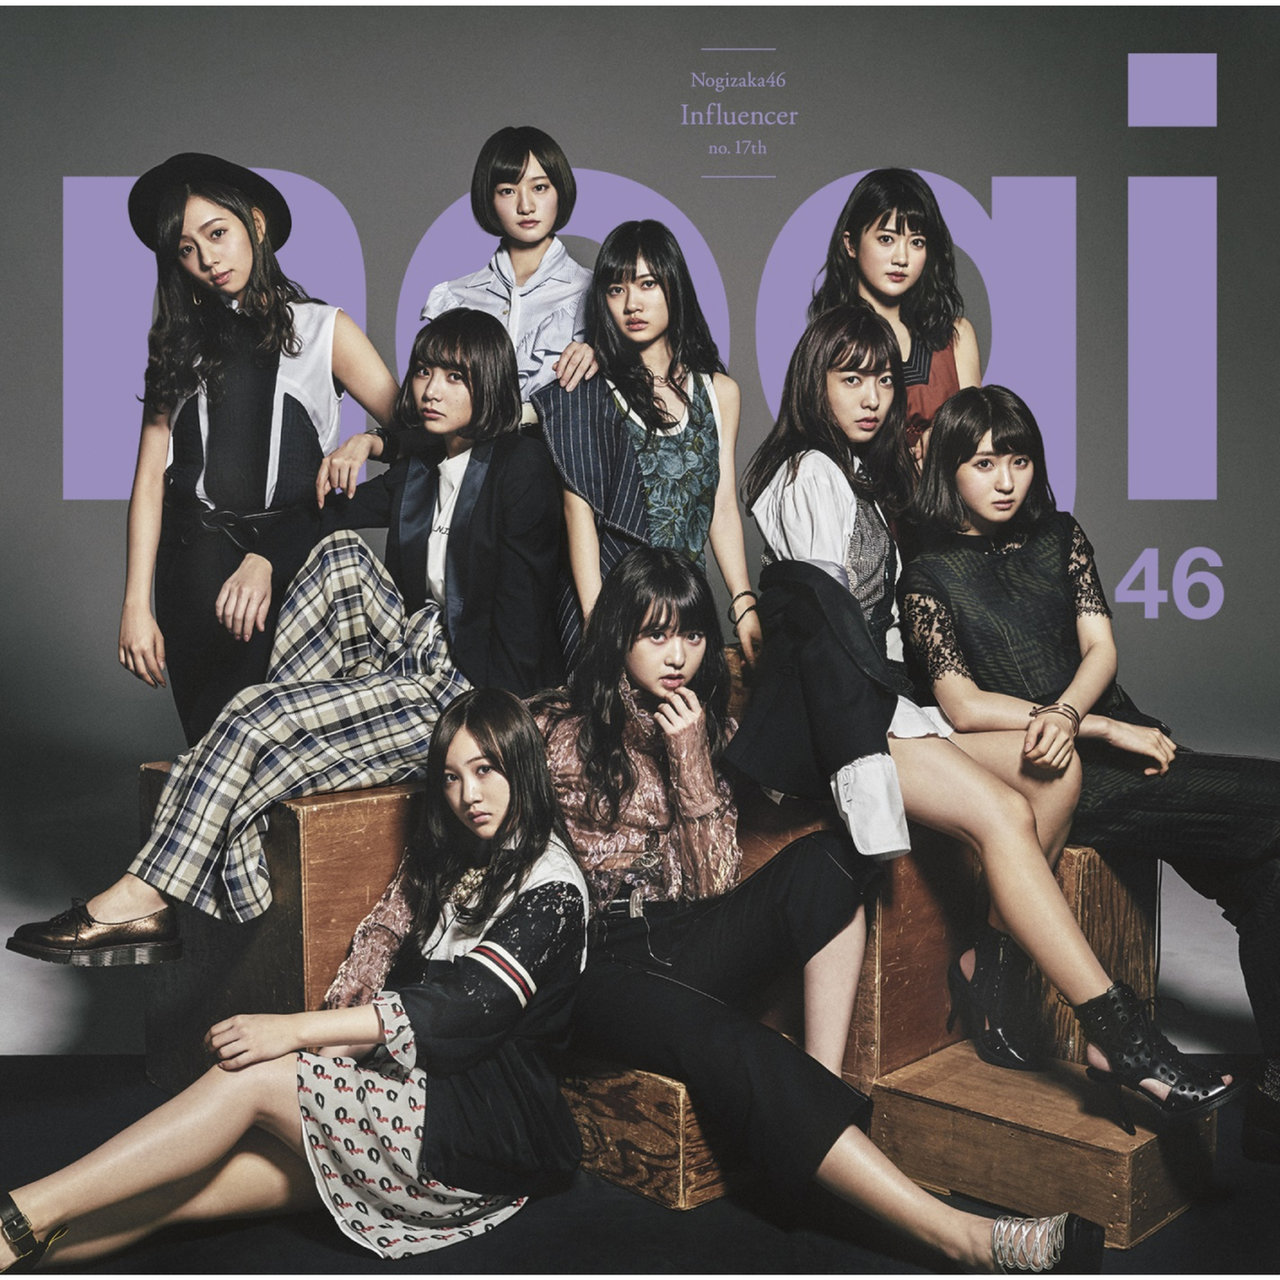 Nogizaka46 Influencer cover artwork